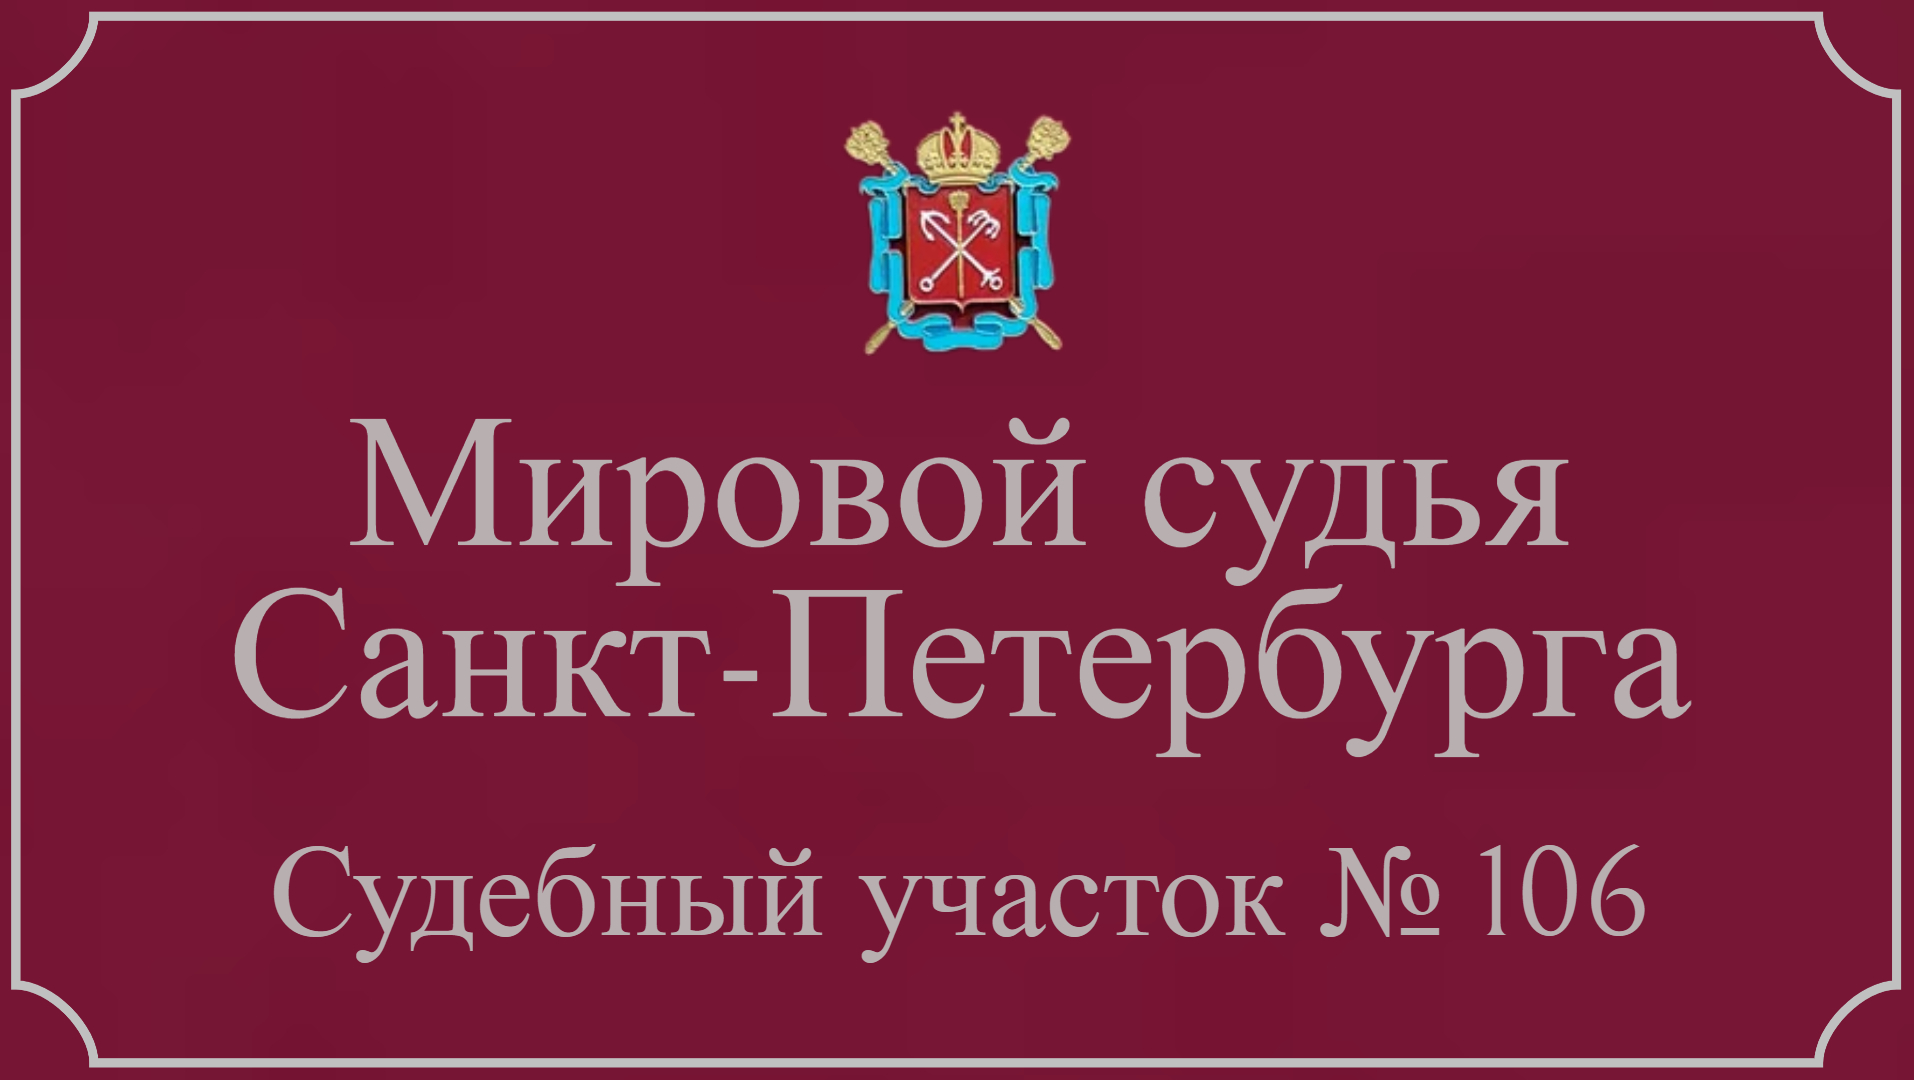 Информация по 106 судебному участку в Санкт-Петербурге.